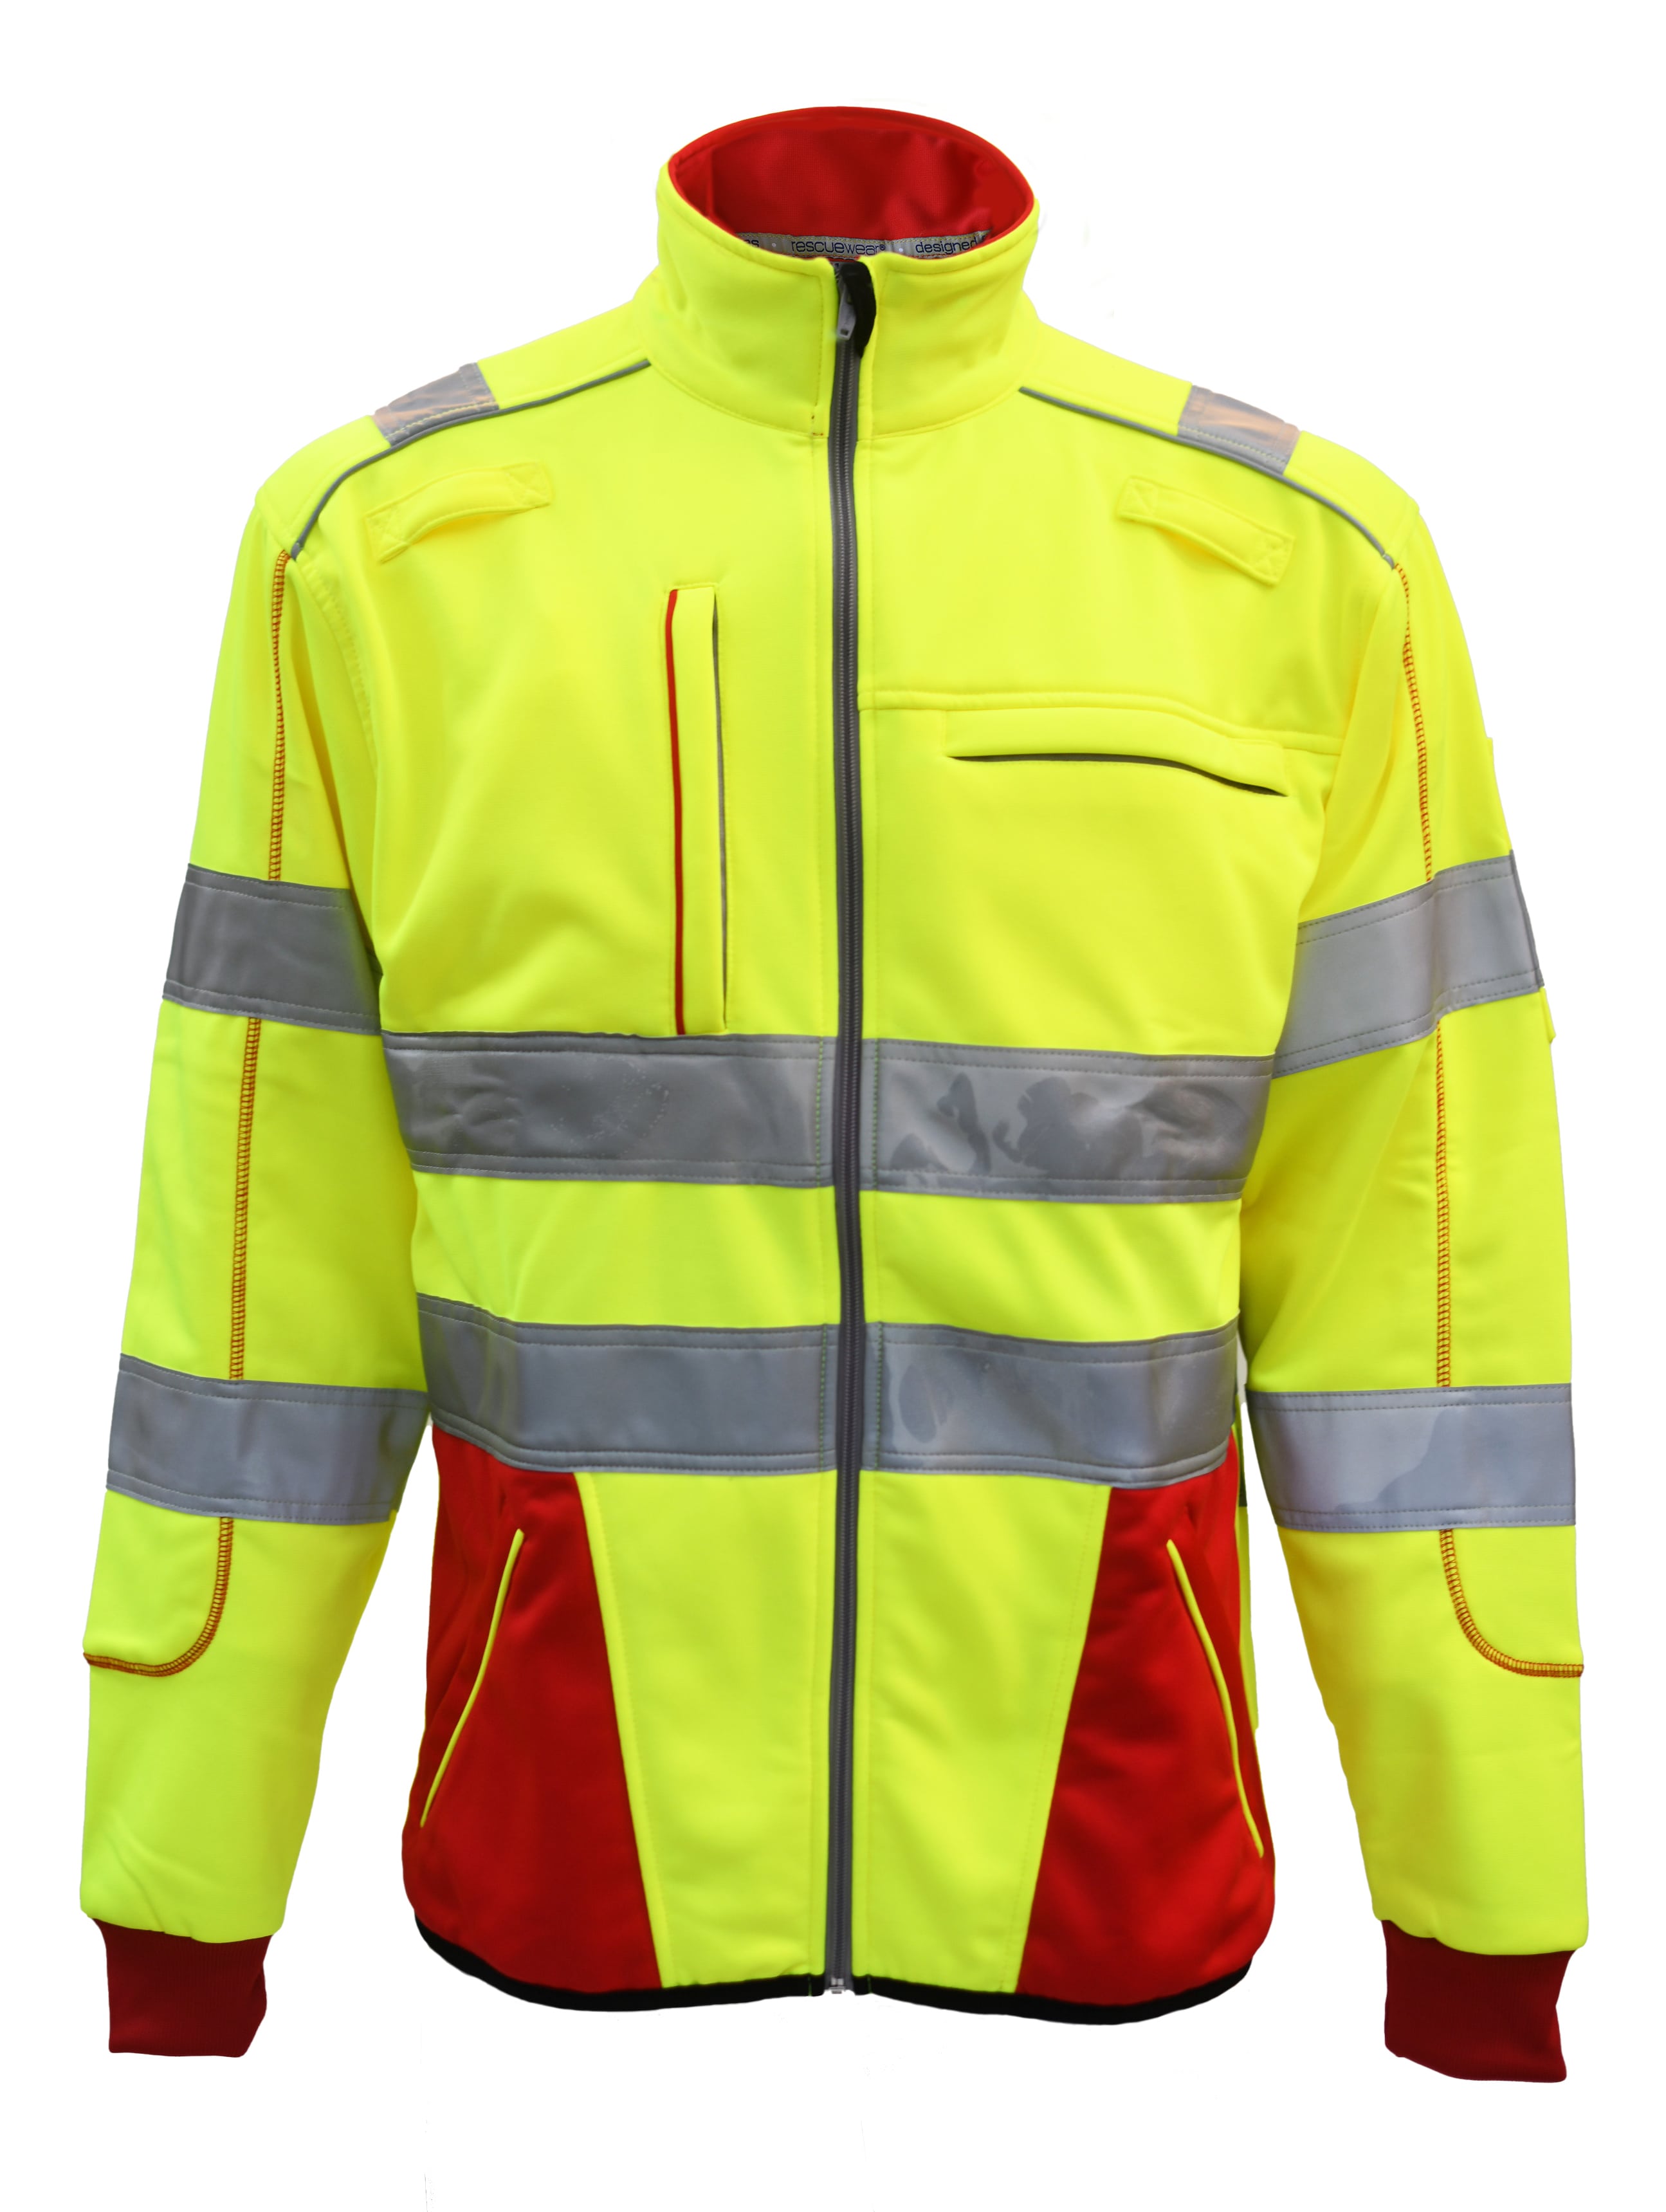 Rescuewear Sweatjacke 33359 Dynamic HiVis Klasse 3 Rot / Neon Gelb